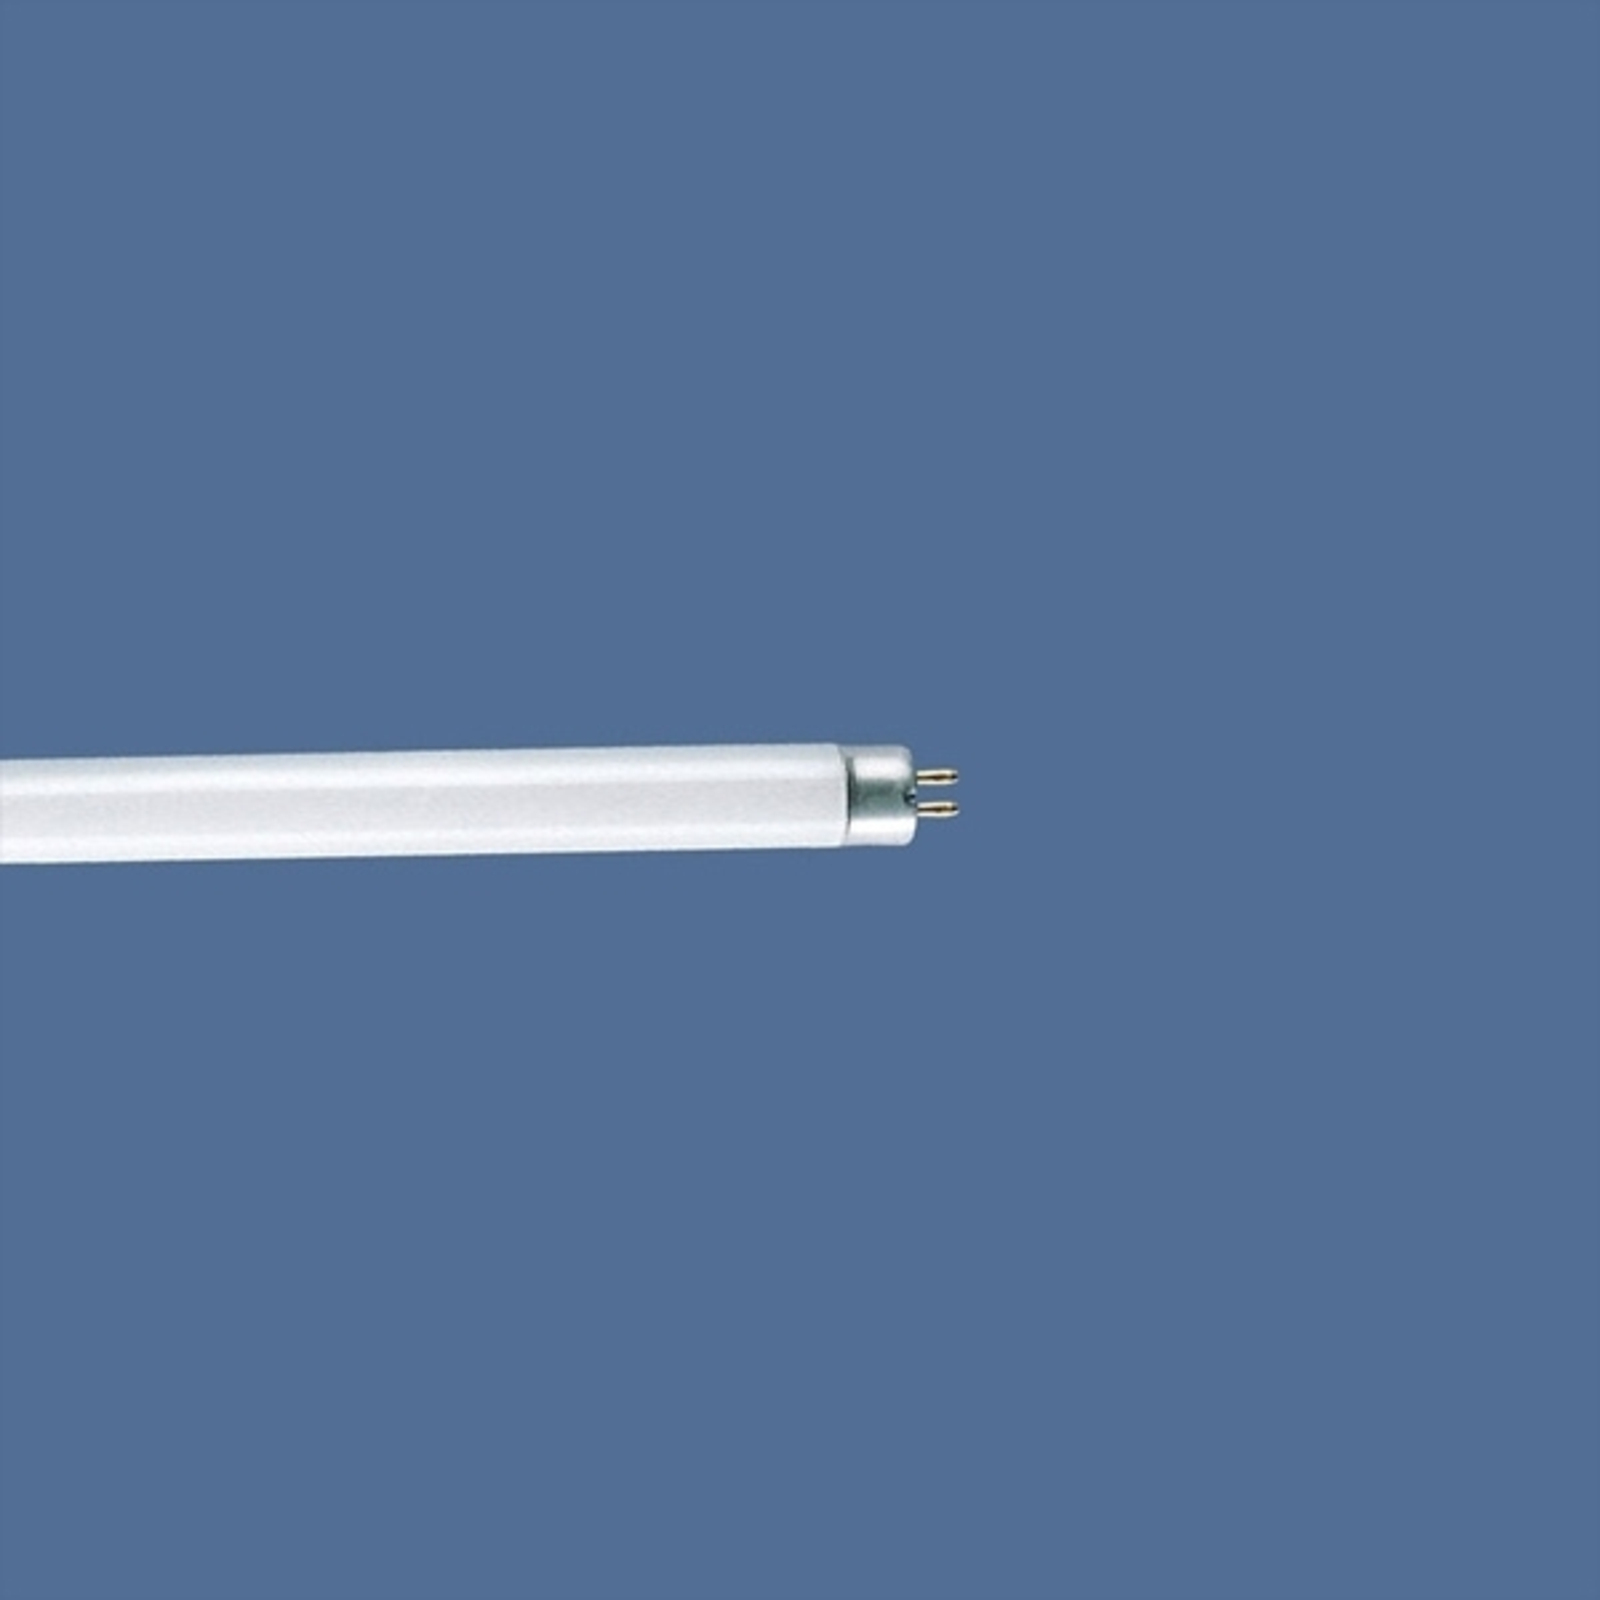 Fluoreszkáló cső T4 30W Standard általános fehér